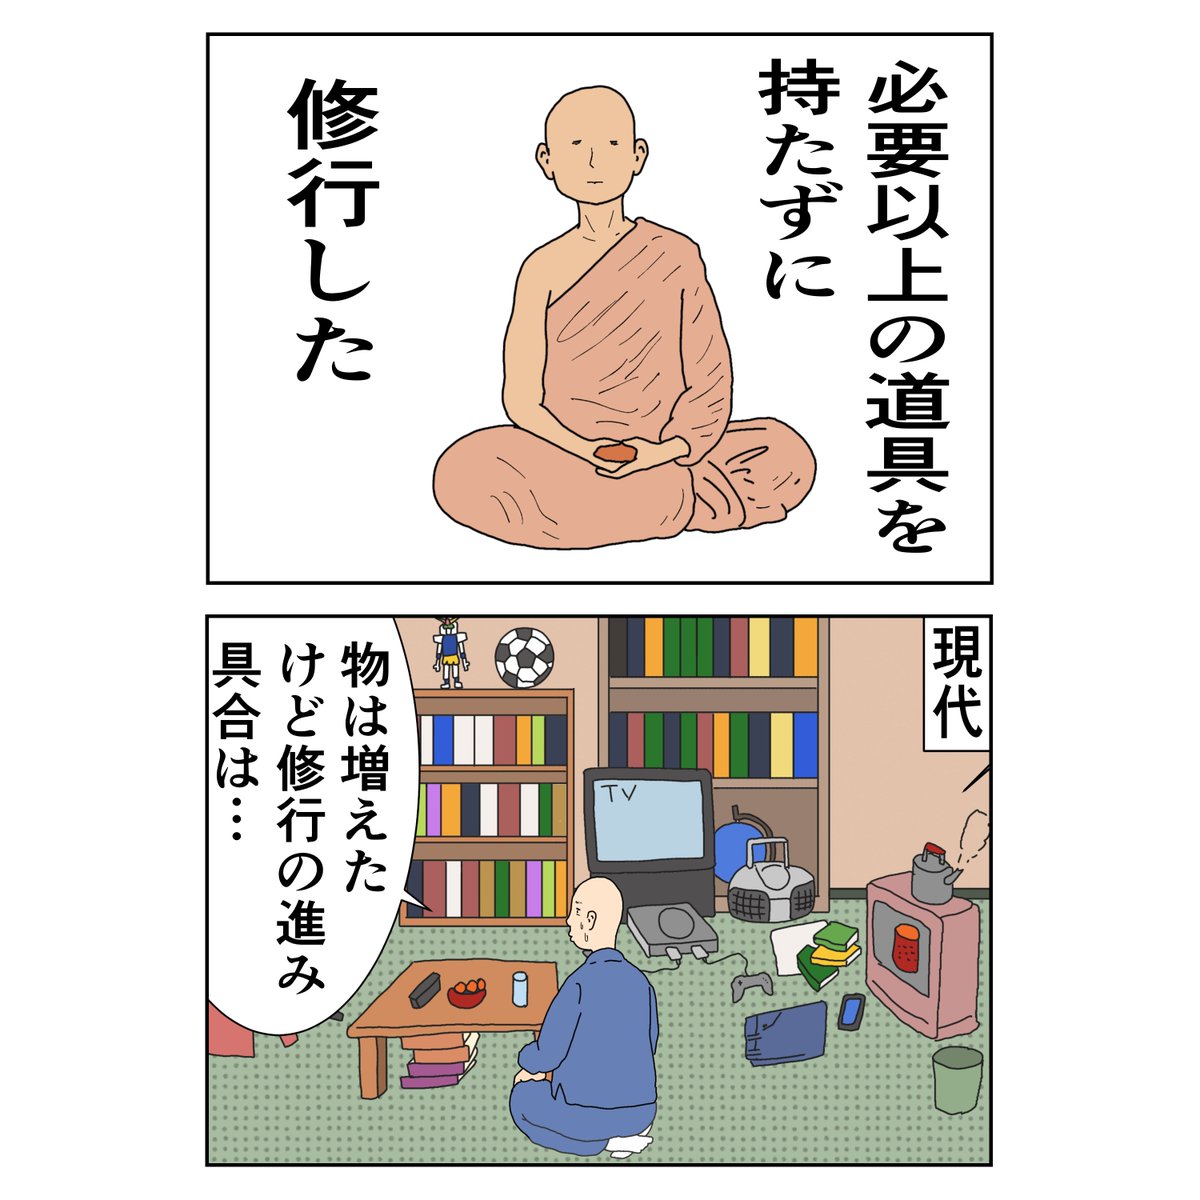 仏教用語を極力4コマで説明する漫画①
#仏教マンガ #4コマ漫画 